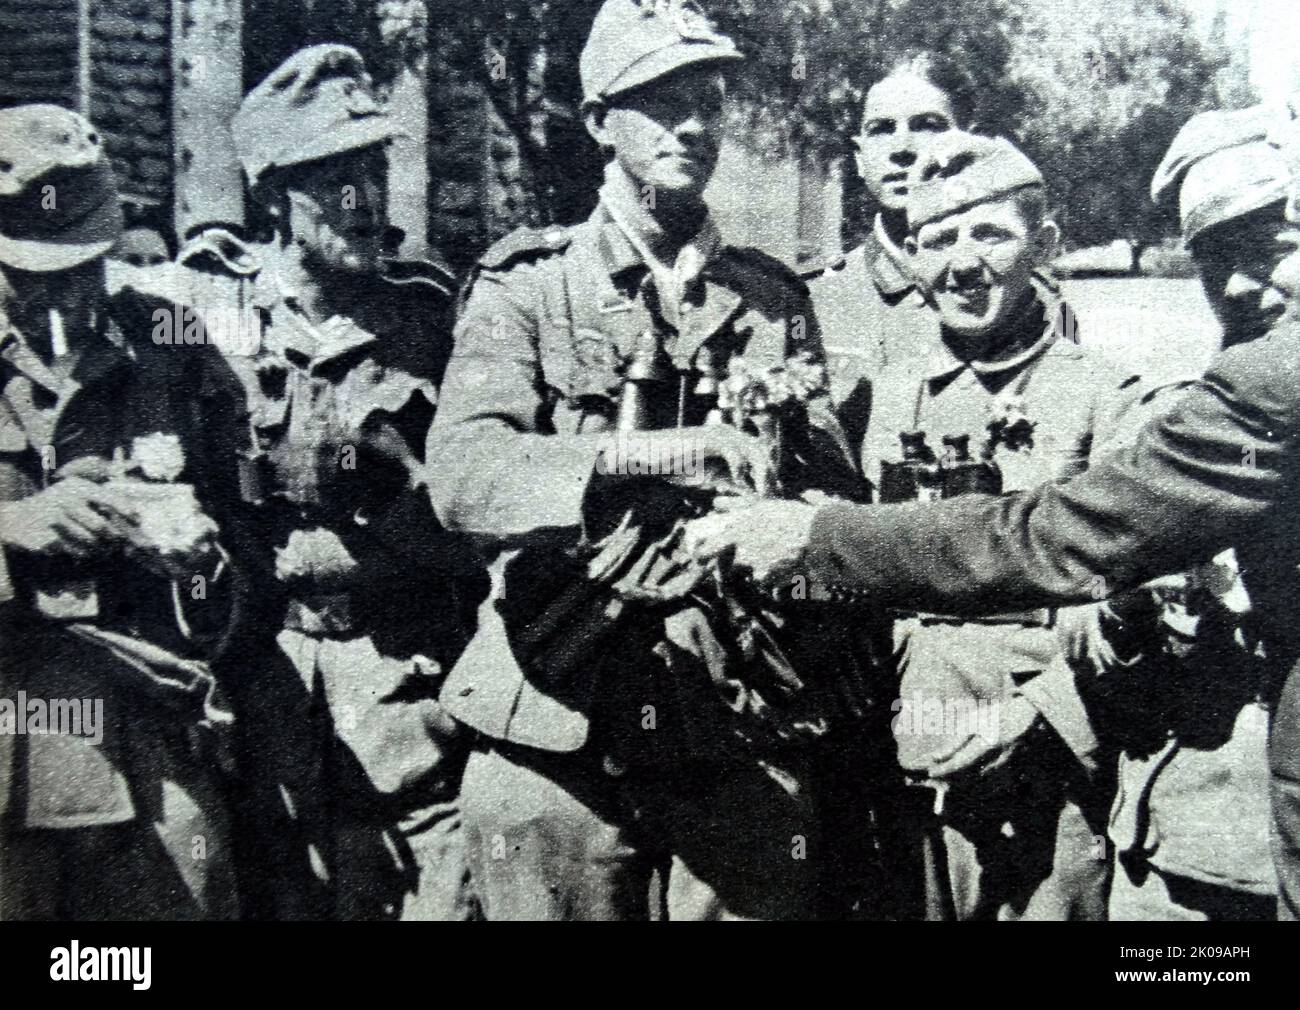 Bei der Einreise nach Athen Zigaretten und Blumen an Nazi-Truppen verteilen, fotografiert von Heinrich Hoffmann. Heinrich Hoffmann (12. September 1885 - 15. Dezember 1957) war Adolf Hitlers offizieller Fotograf und ein Nazi-Politiker und Verleger, der Mitglied des intimen Hitlerkreises war. Stockfoto